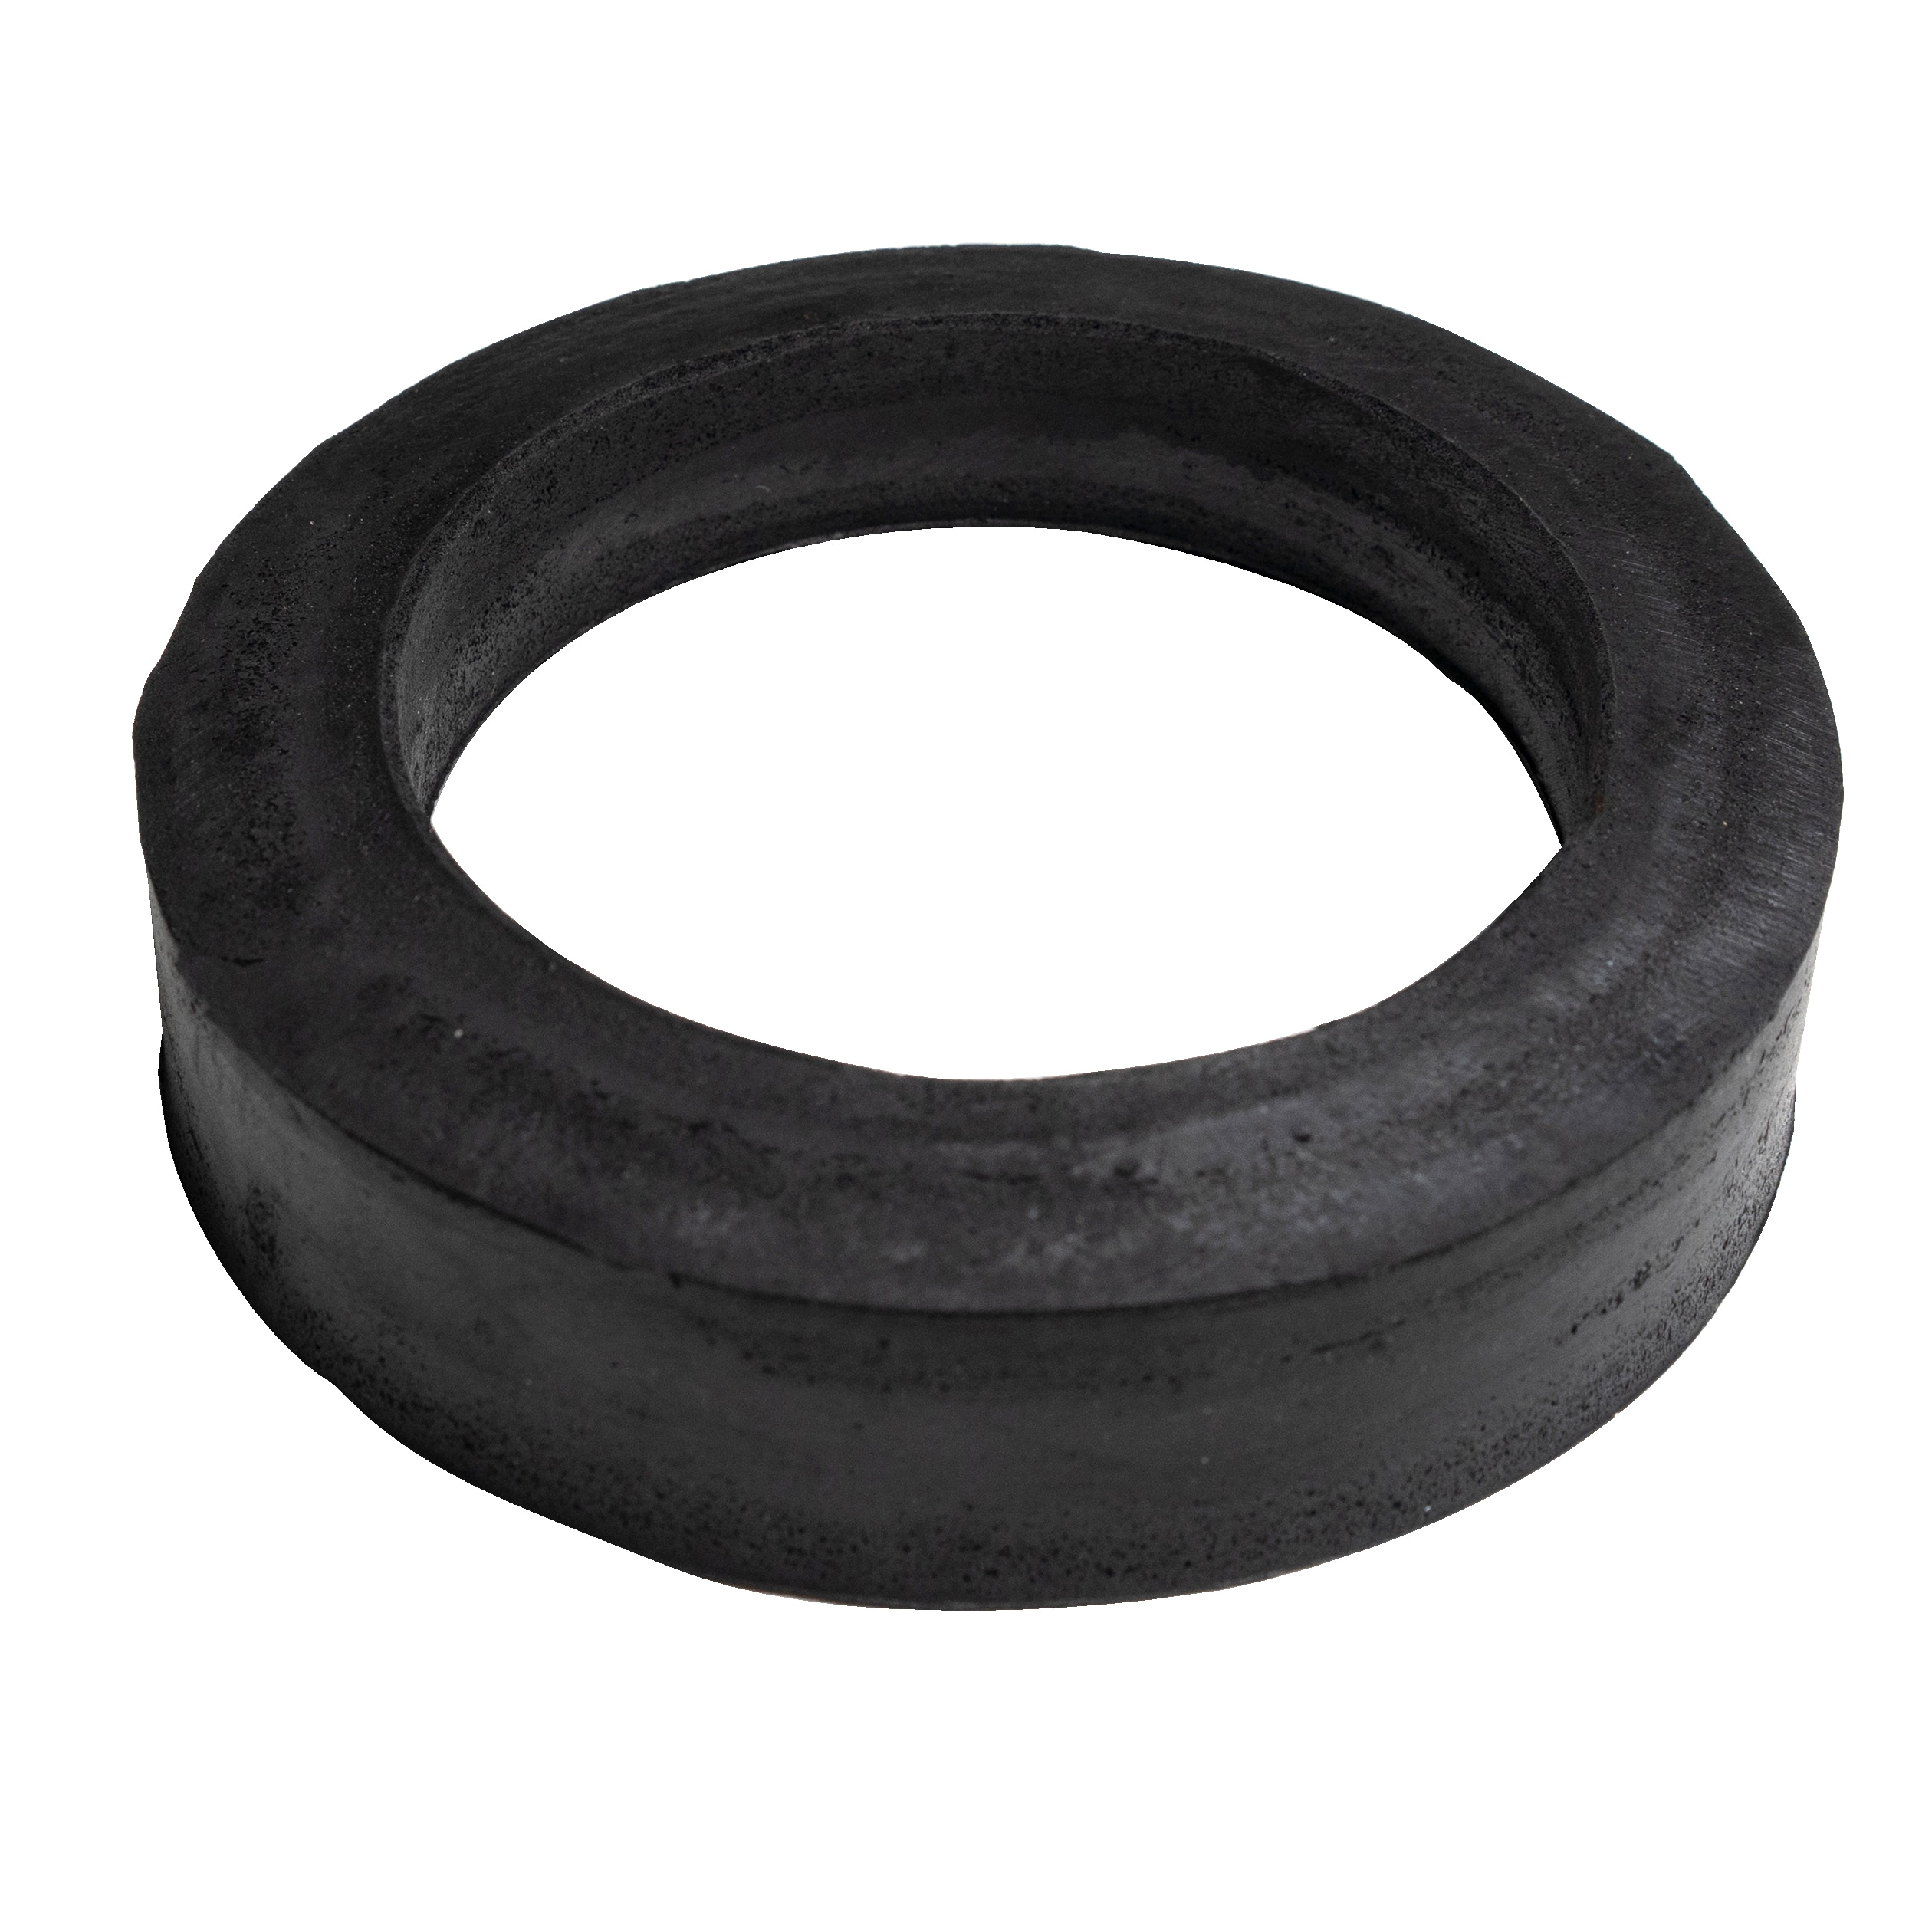 279 Pcs Universal Black Vehicles O-Ring Rubber Sealing Gasket Seal Gasket  Kit